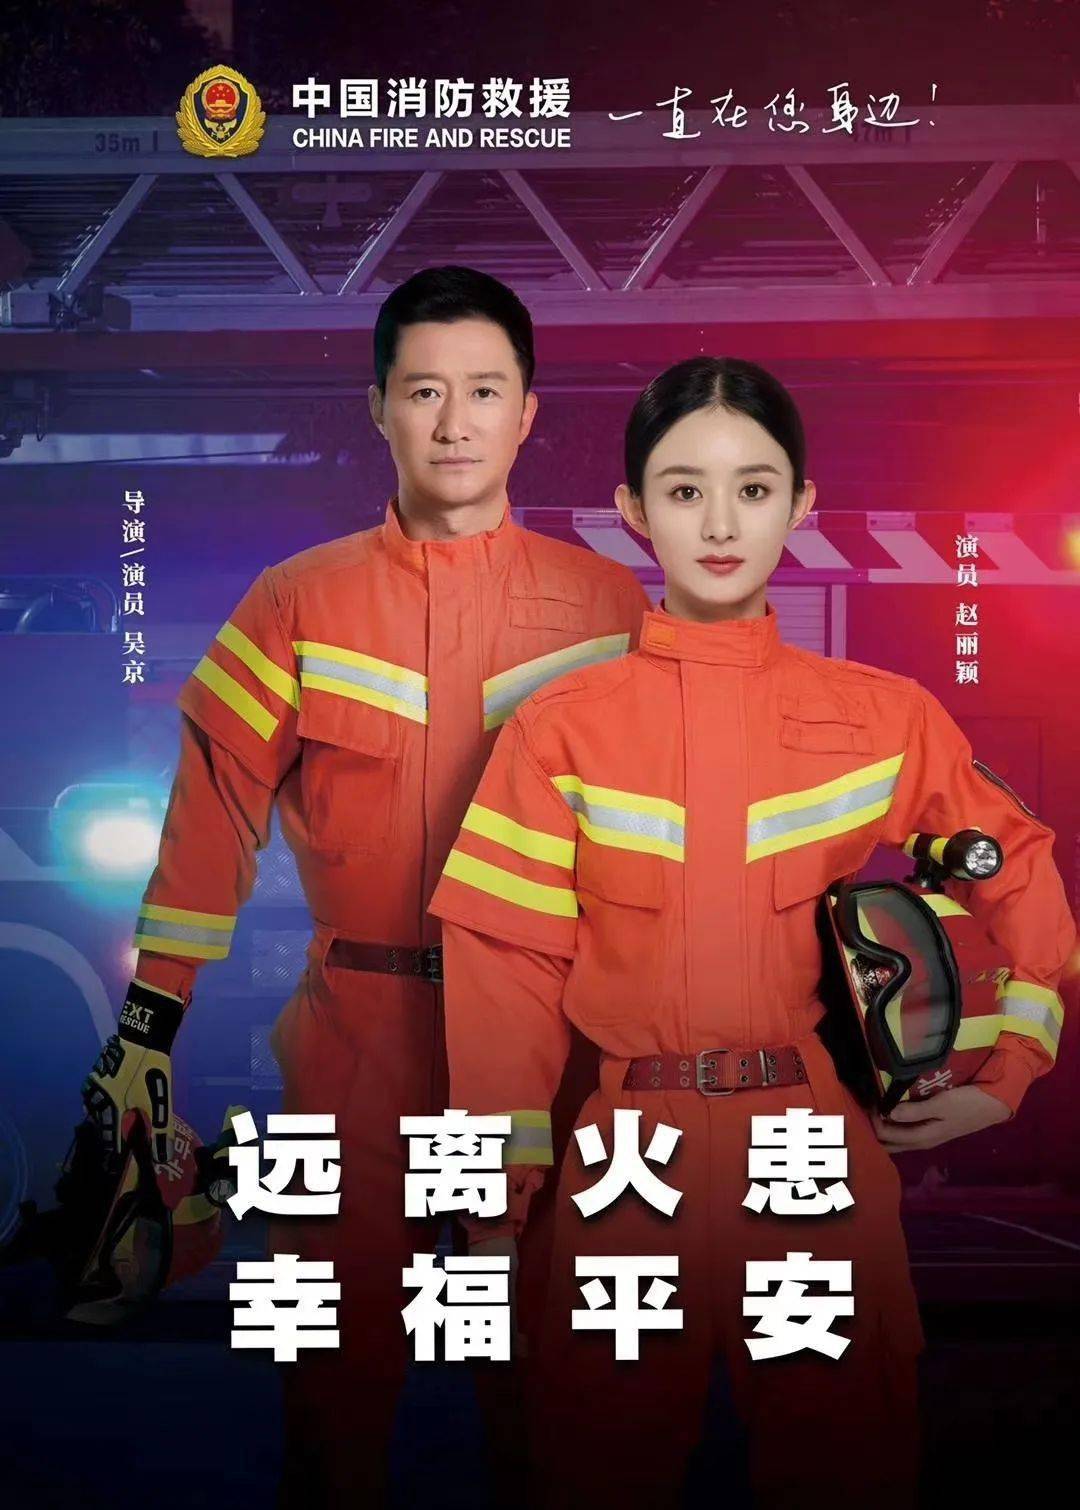 百日消防宣传关注居家安全跟吴京赵丽颖一起行动